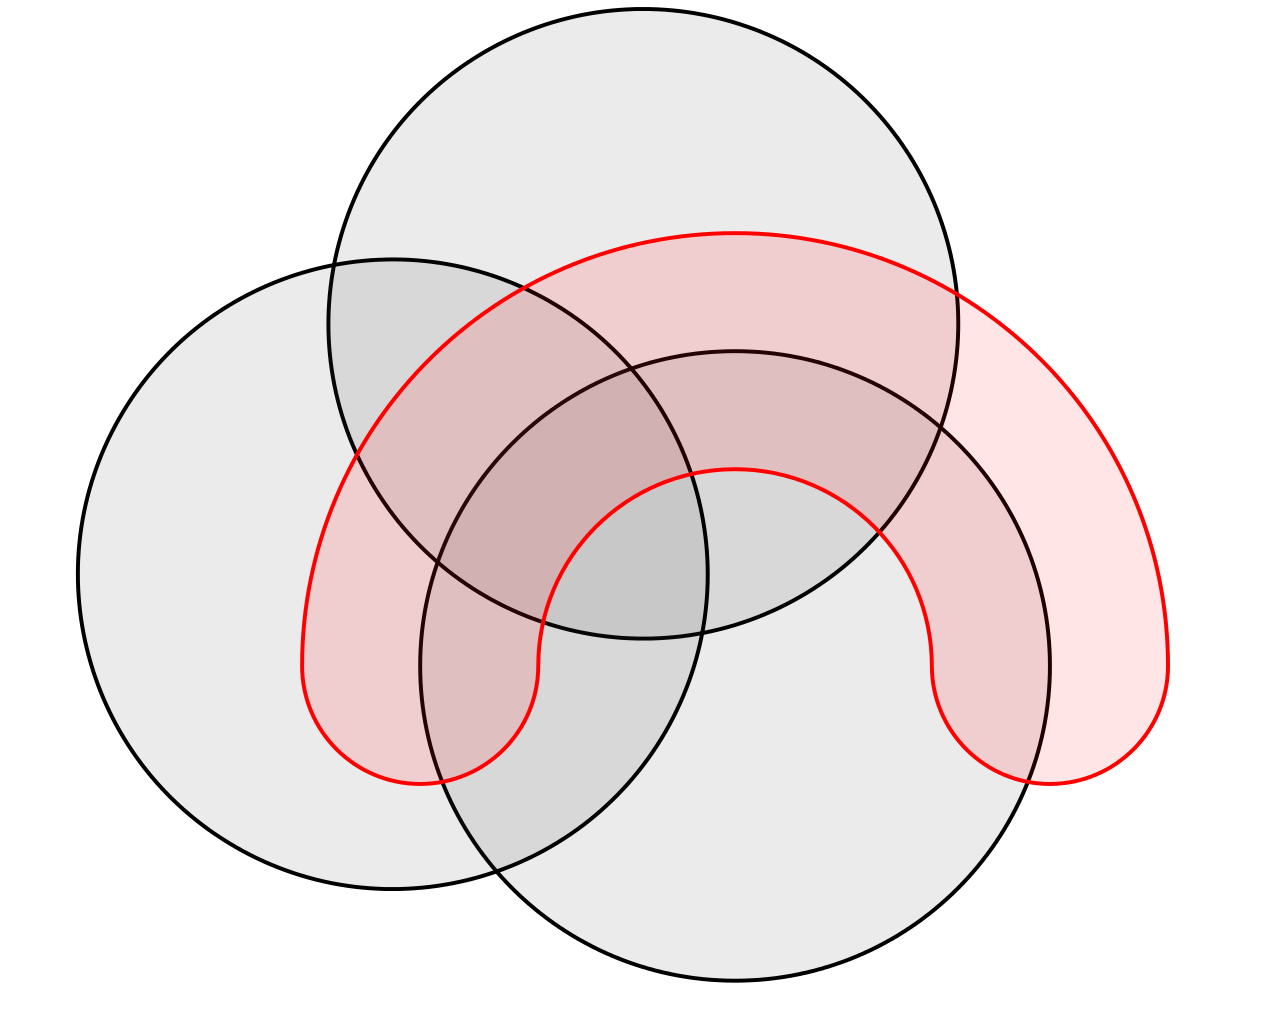 Диаграмма Эйлера для 4 множеств. Диаграмма Венна четыре круга. Диаграмма Венна для 4 множеств. Круги Эйлера 4 круга.